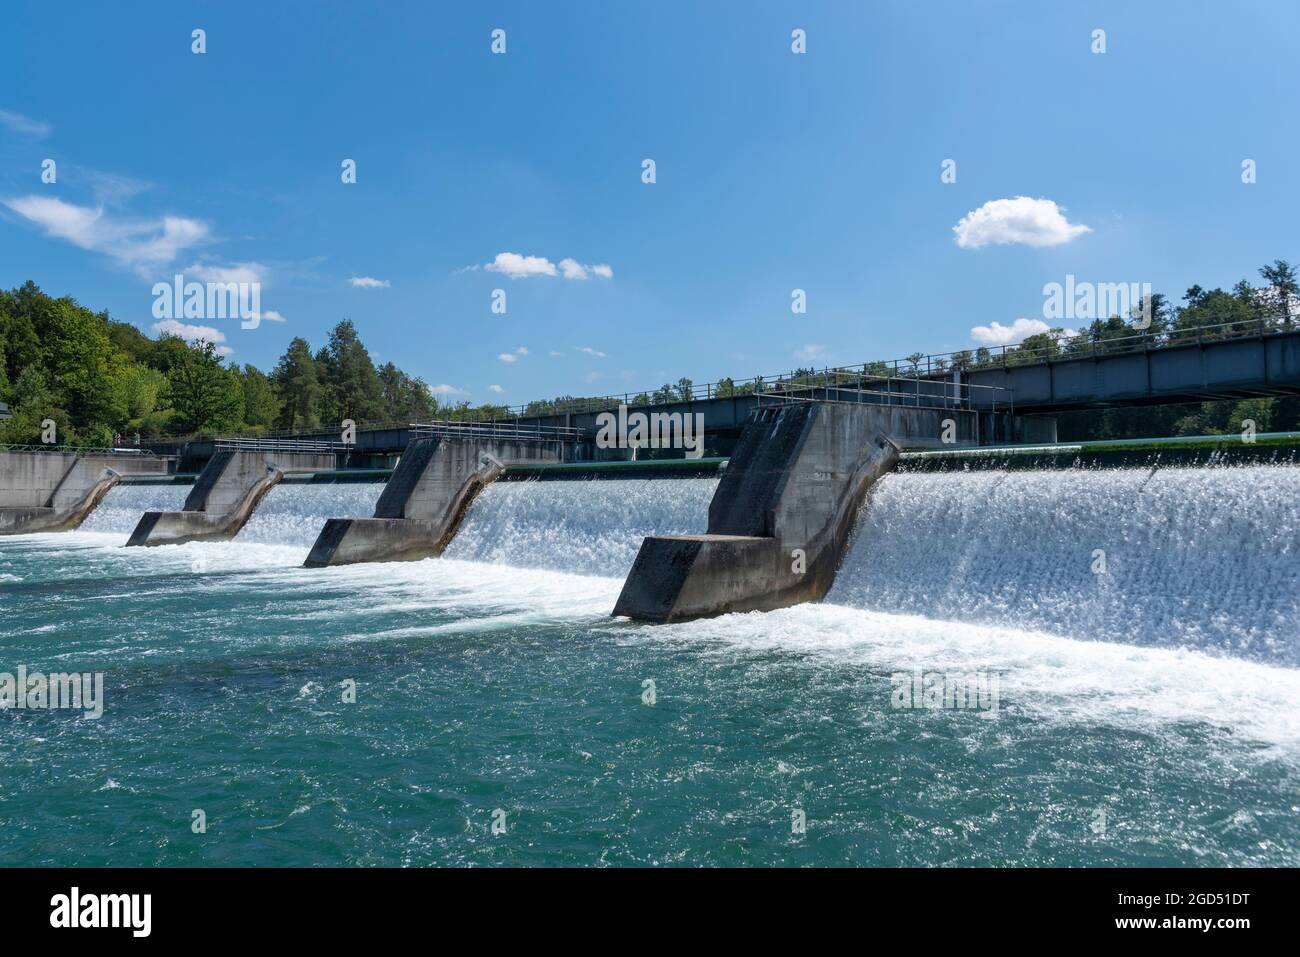 Geografía / viajes, Suiza, Zurich, Rheinau, central hidroeléctrica en el Rin, DERECHOS ADICIONALES-LIQUIDACIÓN-INFO-NO DISPONIBLE Foto de stock